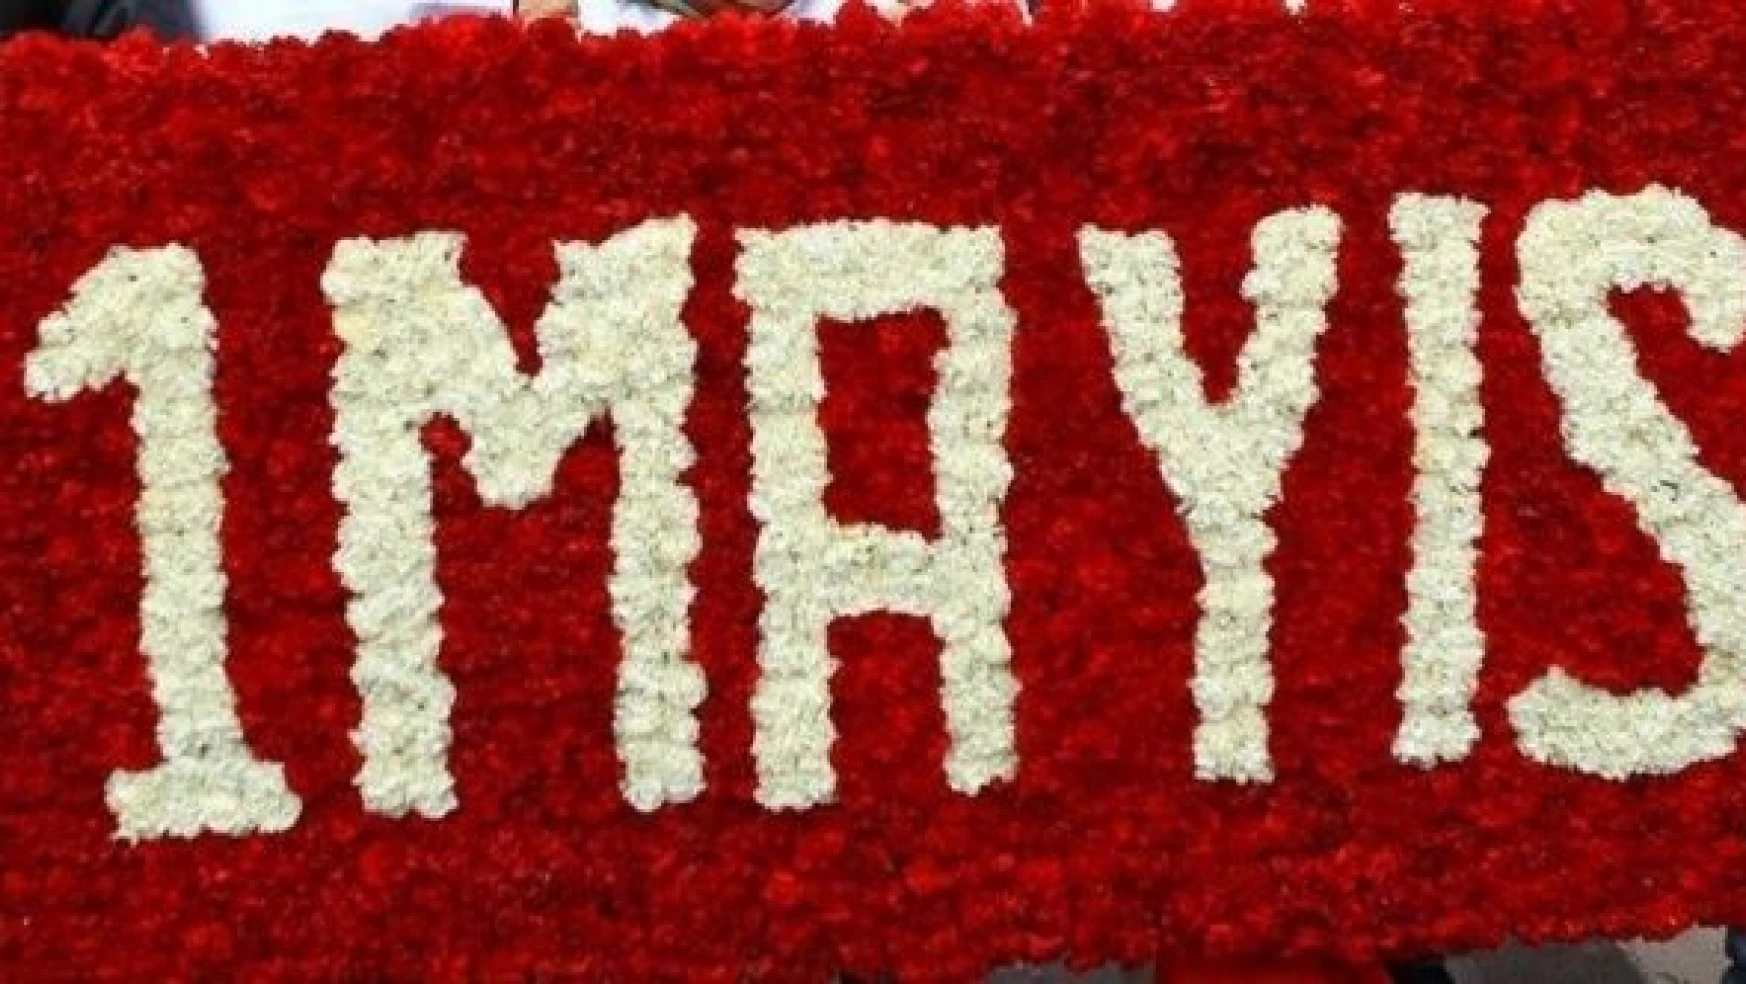 1 Mayıs işçi bayramı kutlama sözleri ve mesajları!